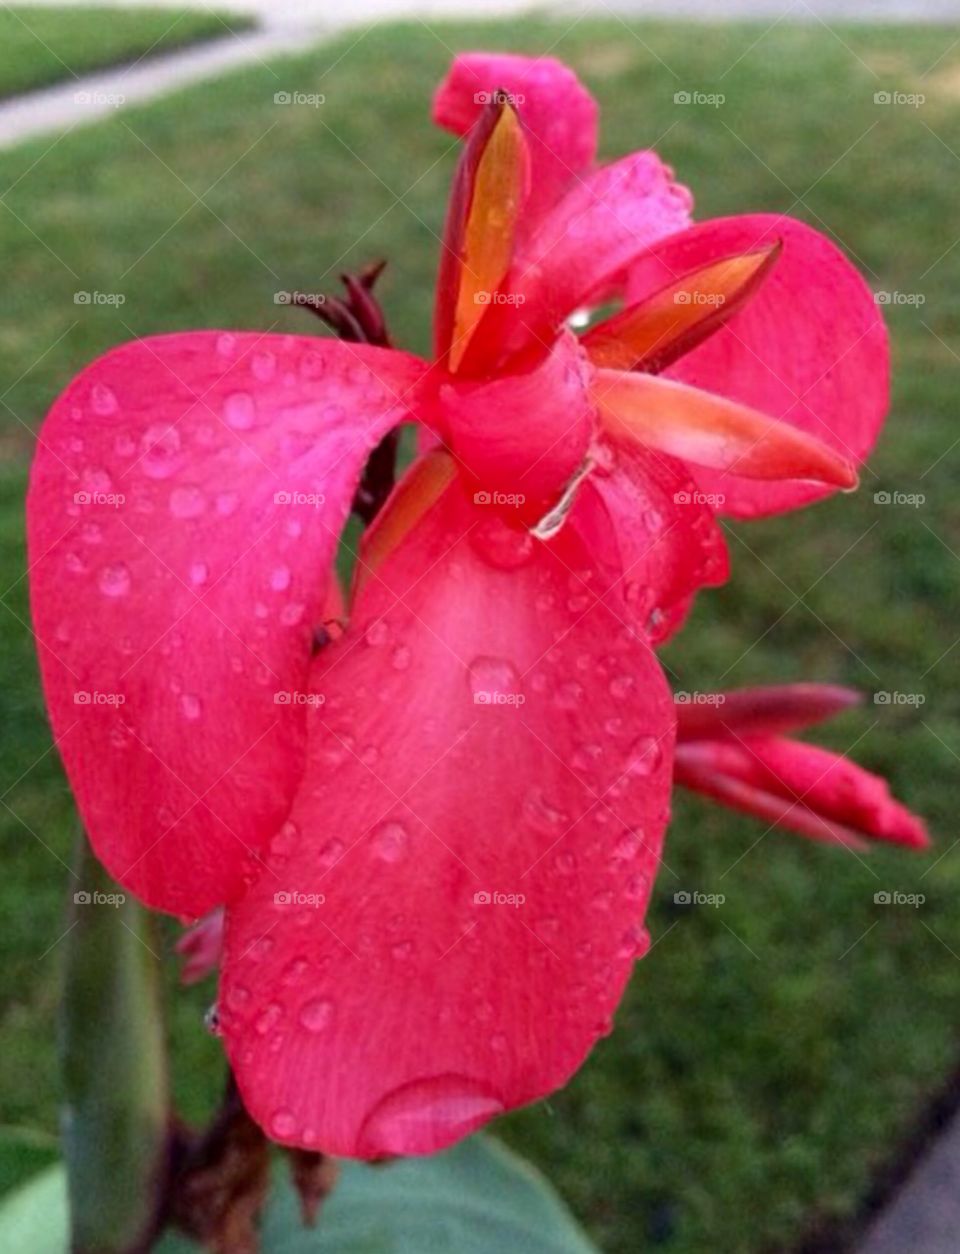 Pink flower after rain 